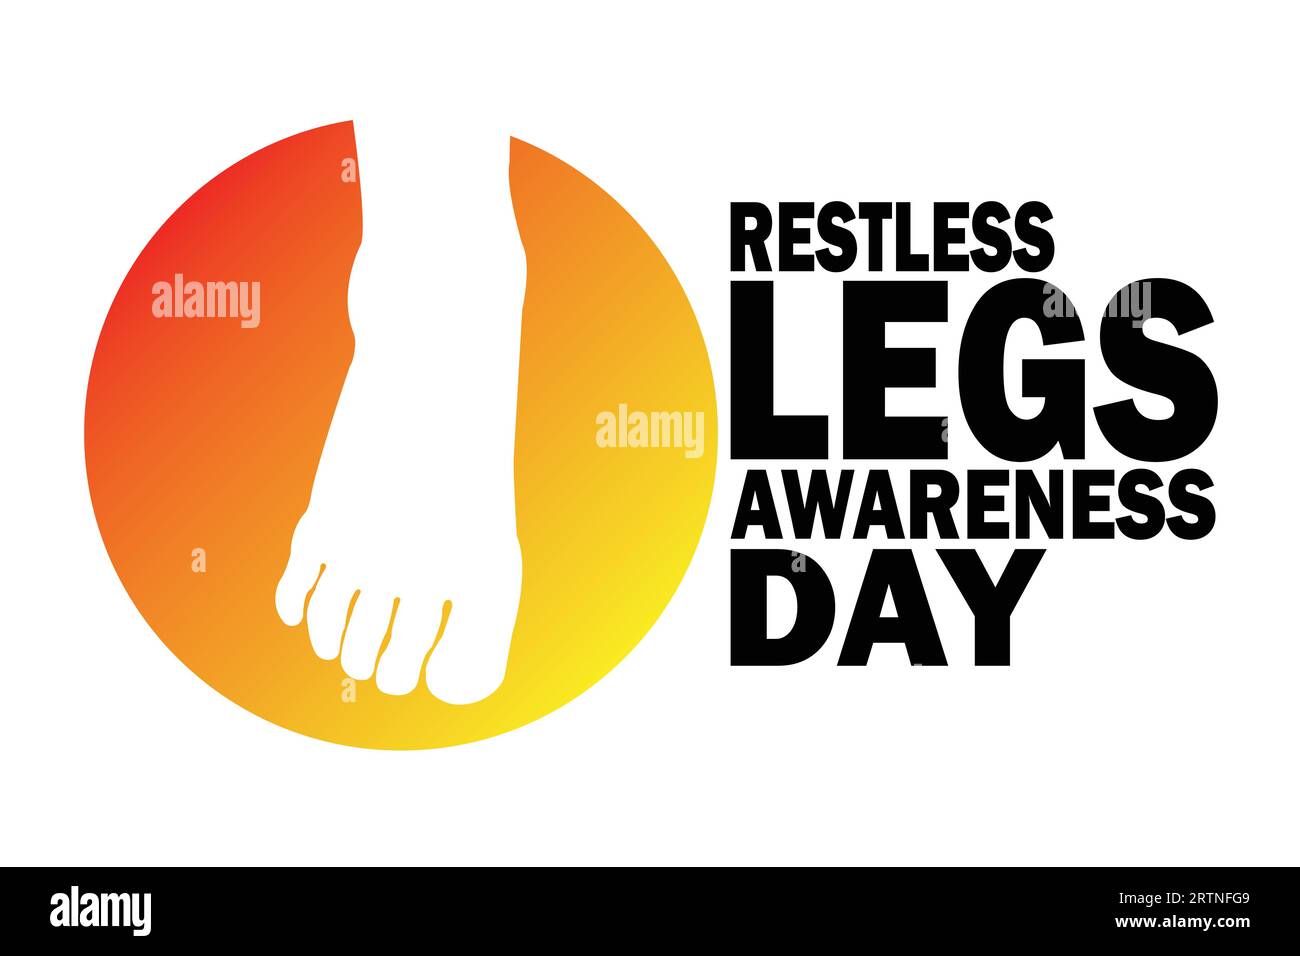 Vektor-Illustration eines Hintergrunds für den Tag des Restless Legs Awareness. Geeignet für Grußkarten, Poster und Banner Stock Vektor